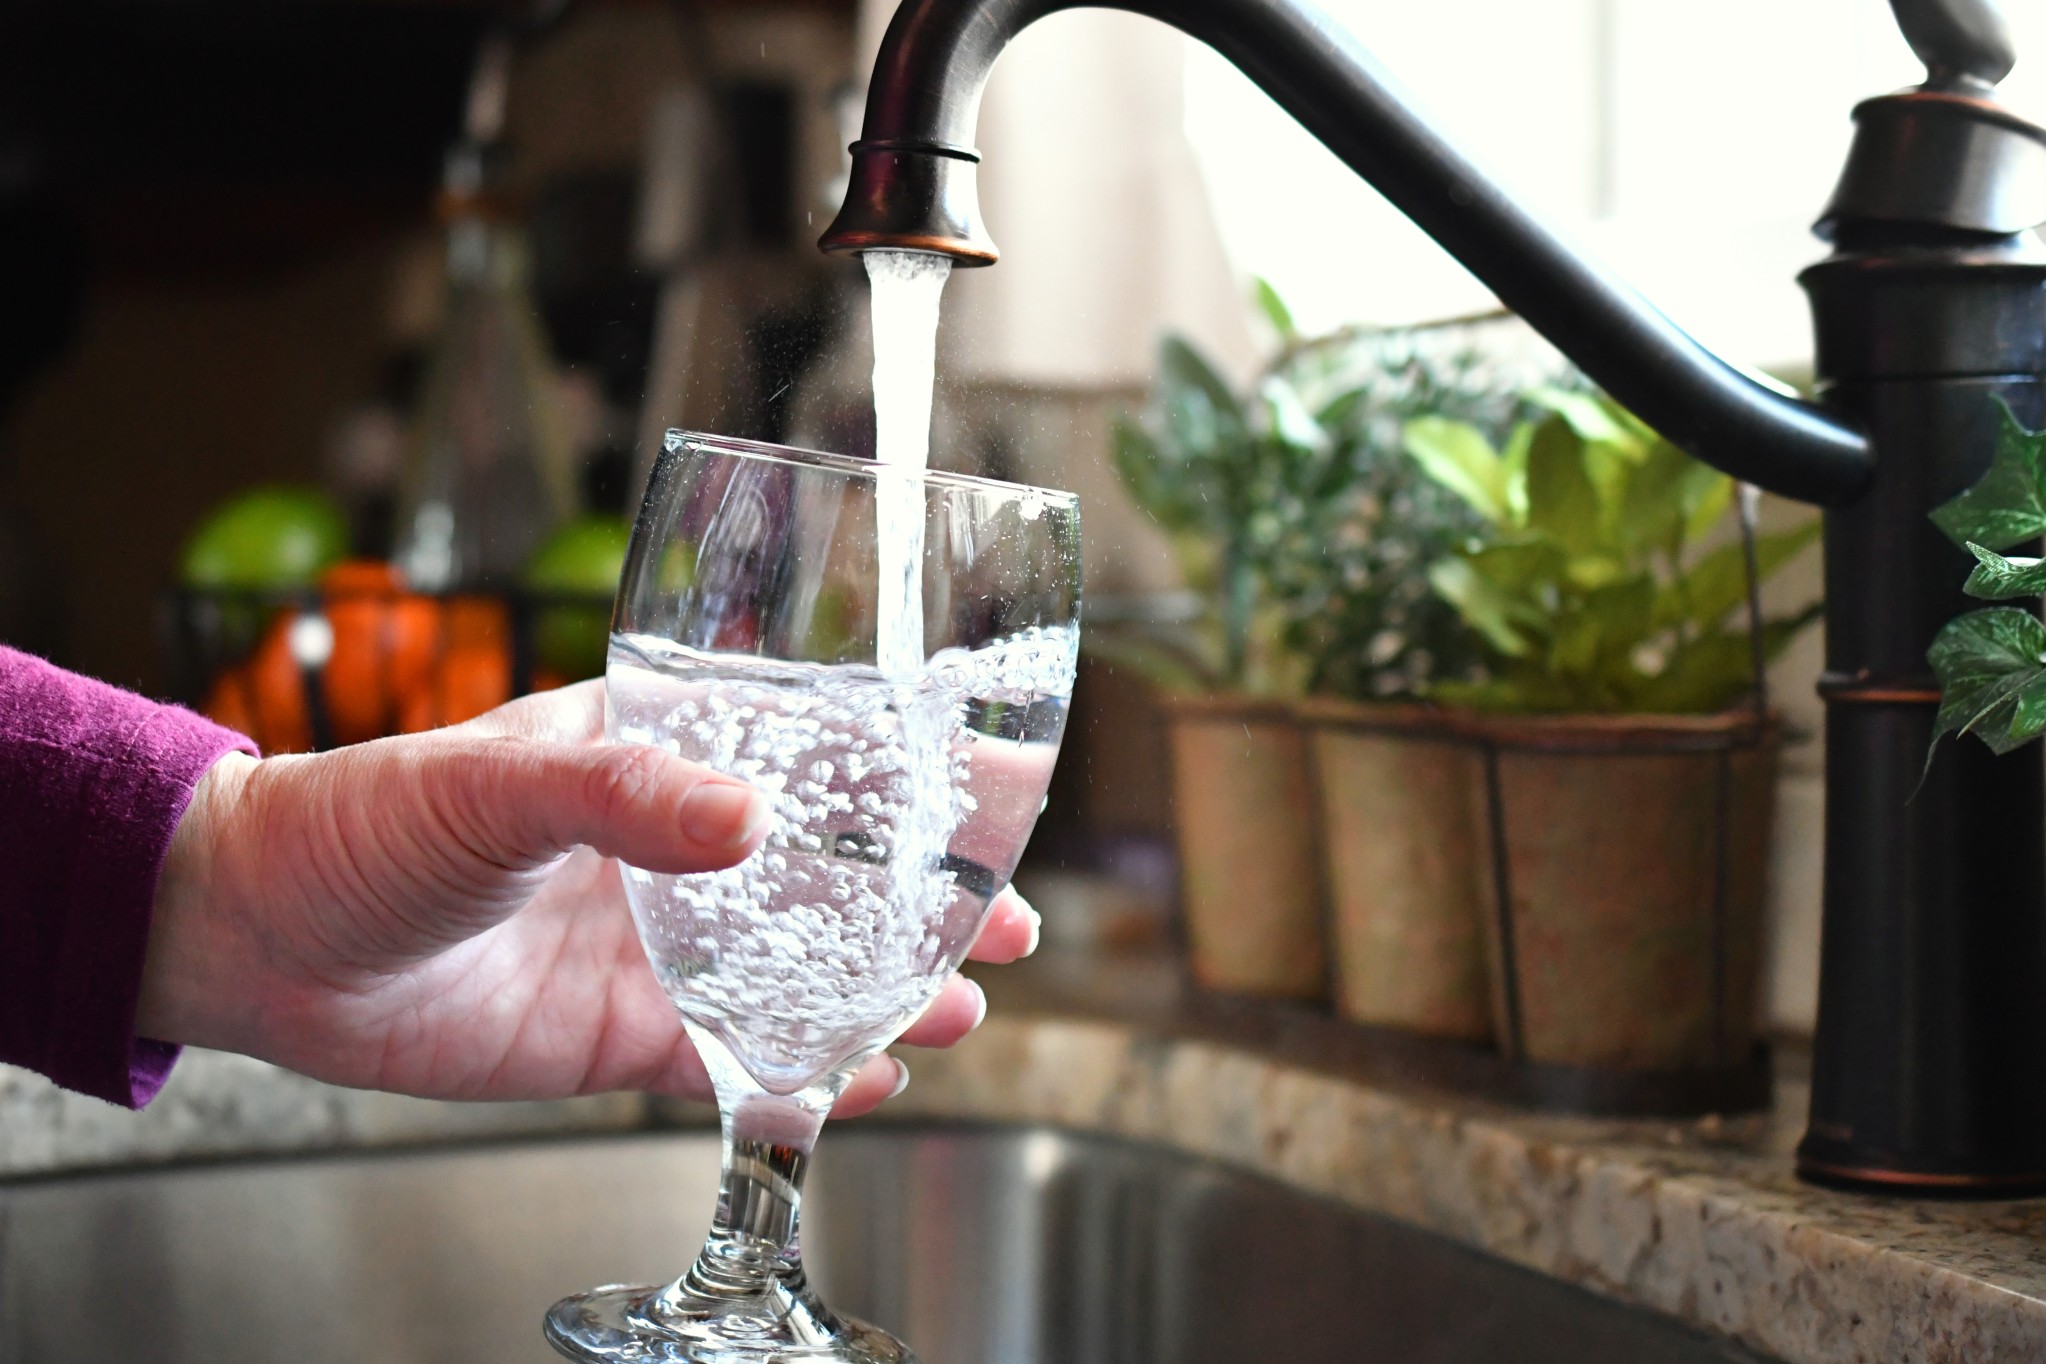 Trinkwasser genießen - Enthärtungsanlage bzw. Entkalkungsanlage nutzen Bild: Trinkwasser Genuss @MargJohnsonVA via Twenty20